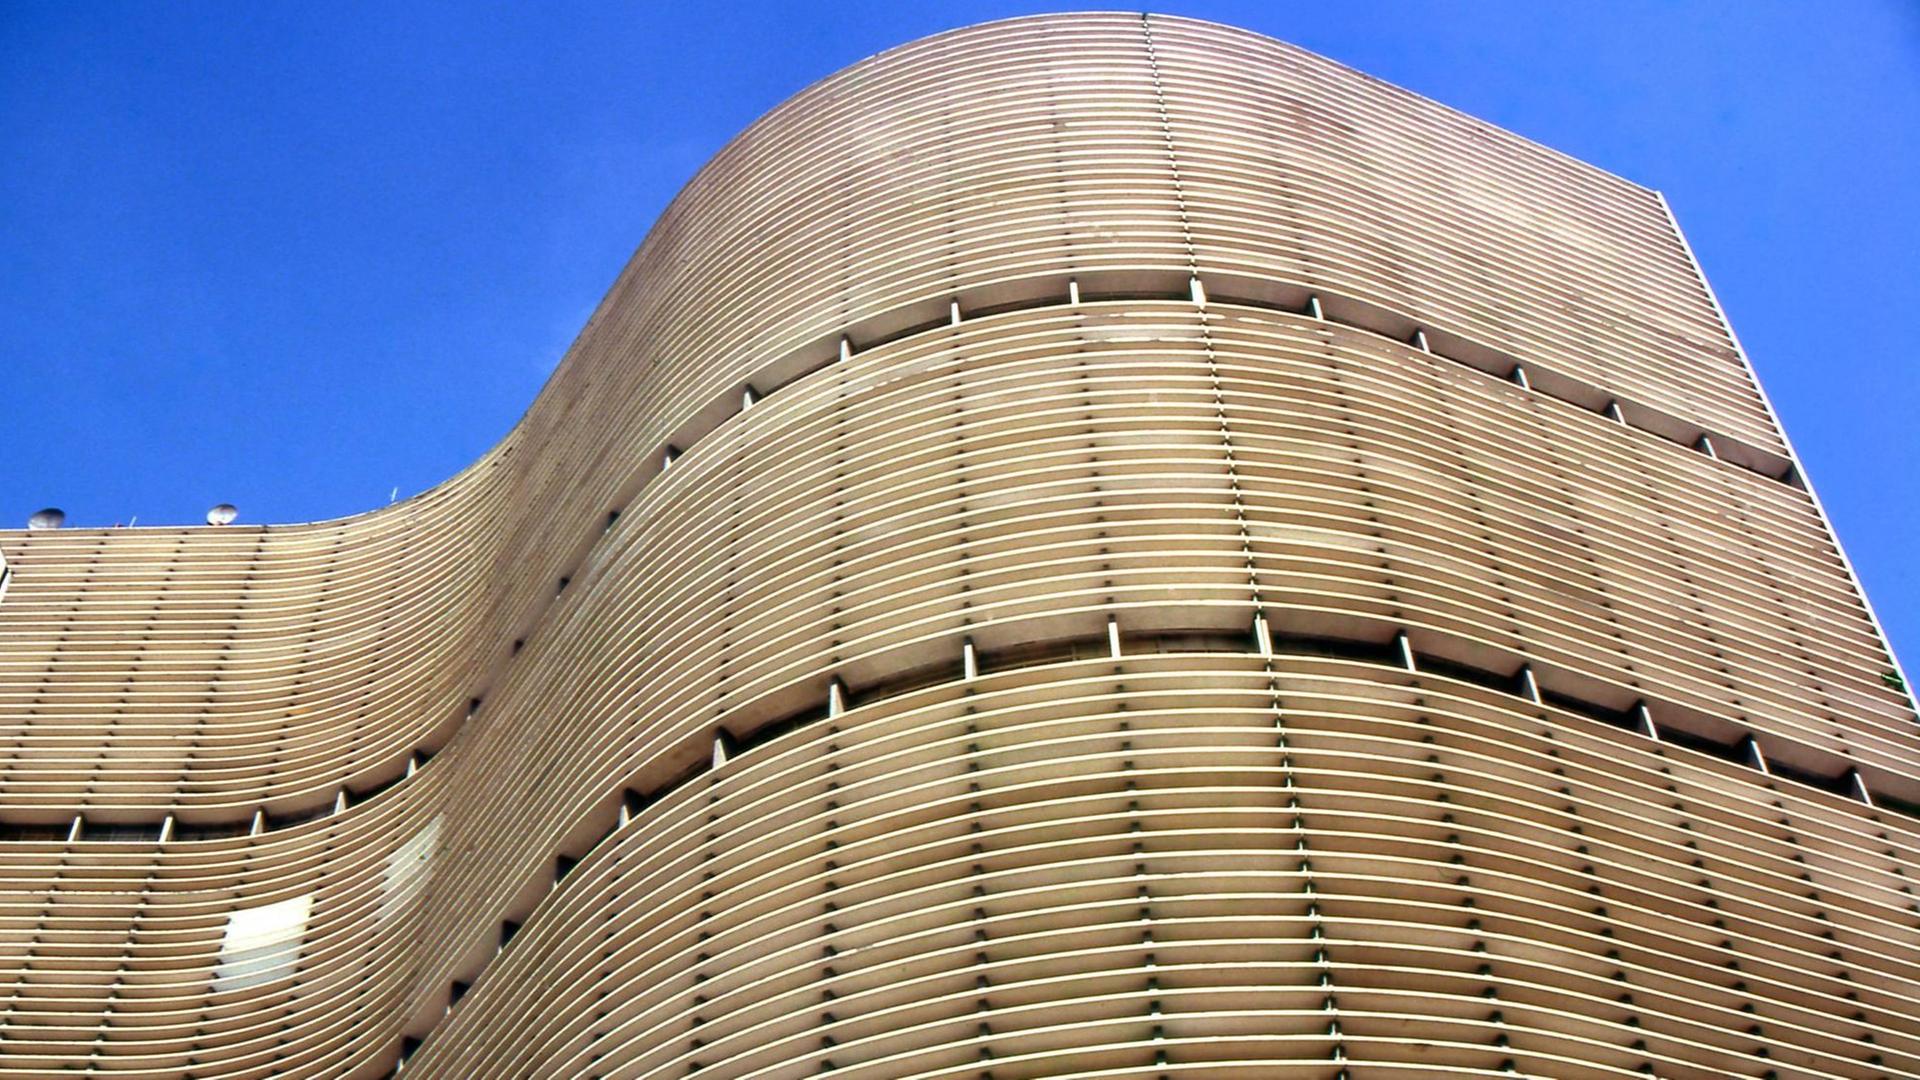 Das Edifício Copan in sanfter S-Form trägt klar die Handschrift seines Schöpfer Niemeyer.